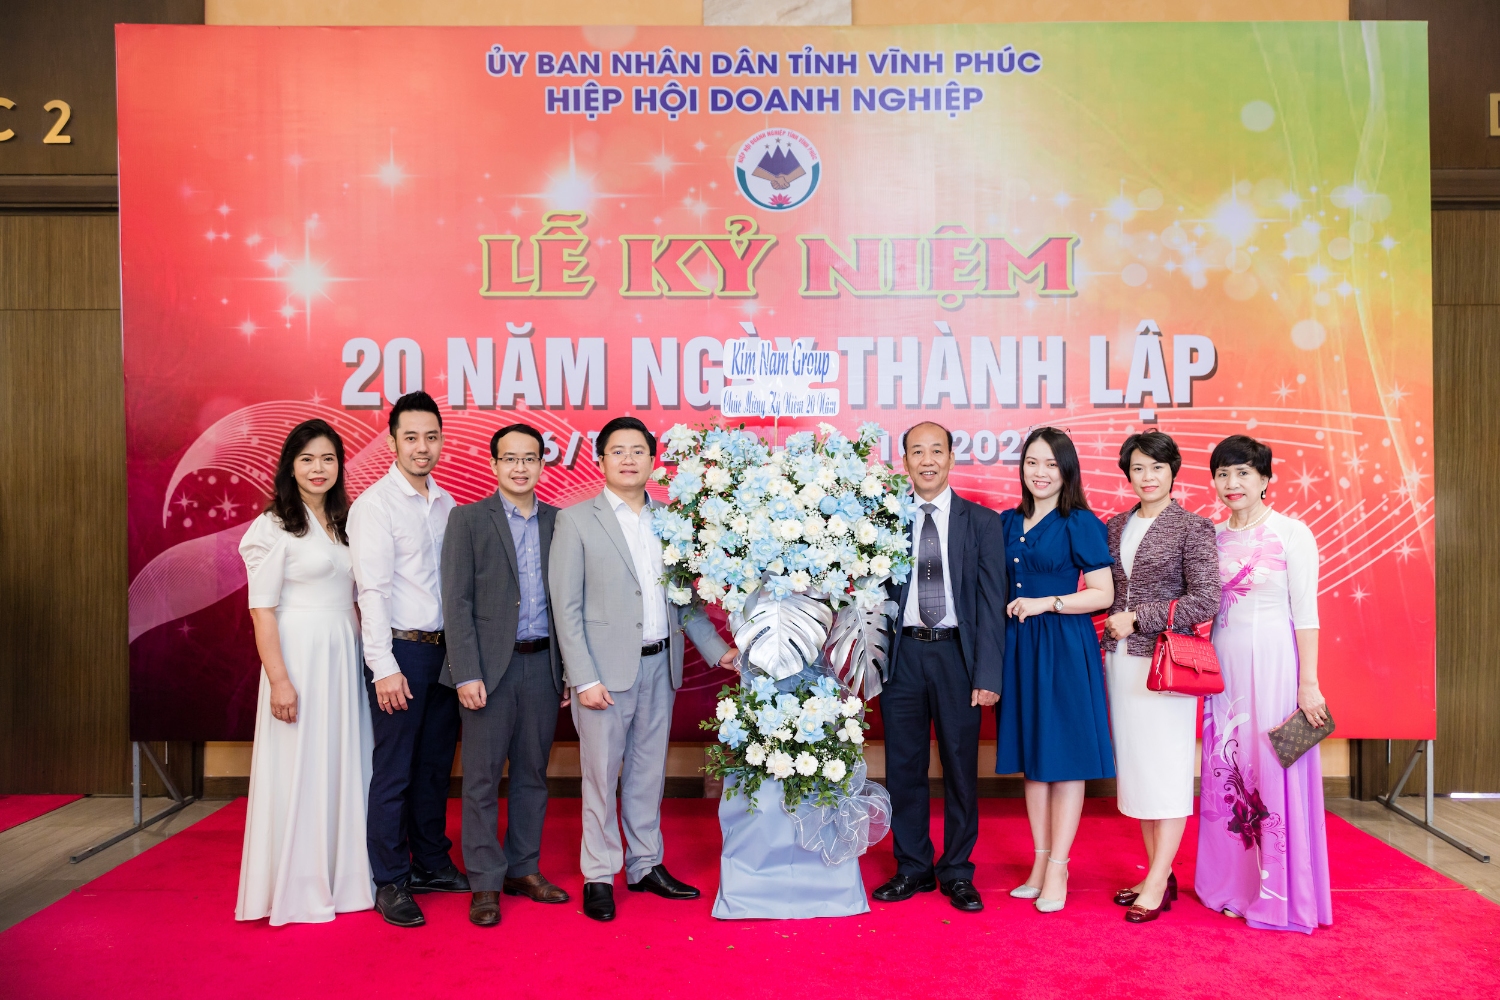 Kim Nam Group tham dự Lễ kỷ niệm 20 năm ngày thành lập Hiệp hội Doanh nghiệp tỉnh Vĩnh Phúc